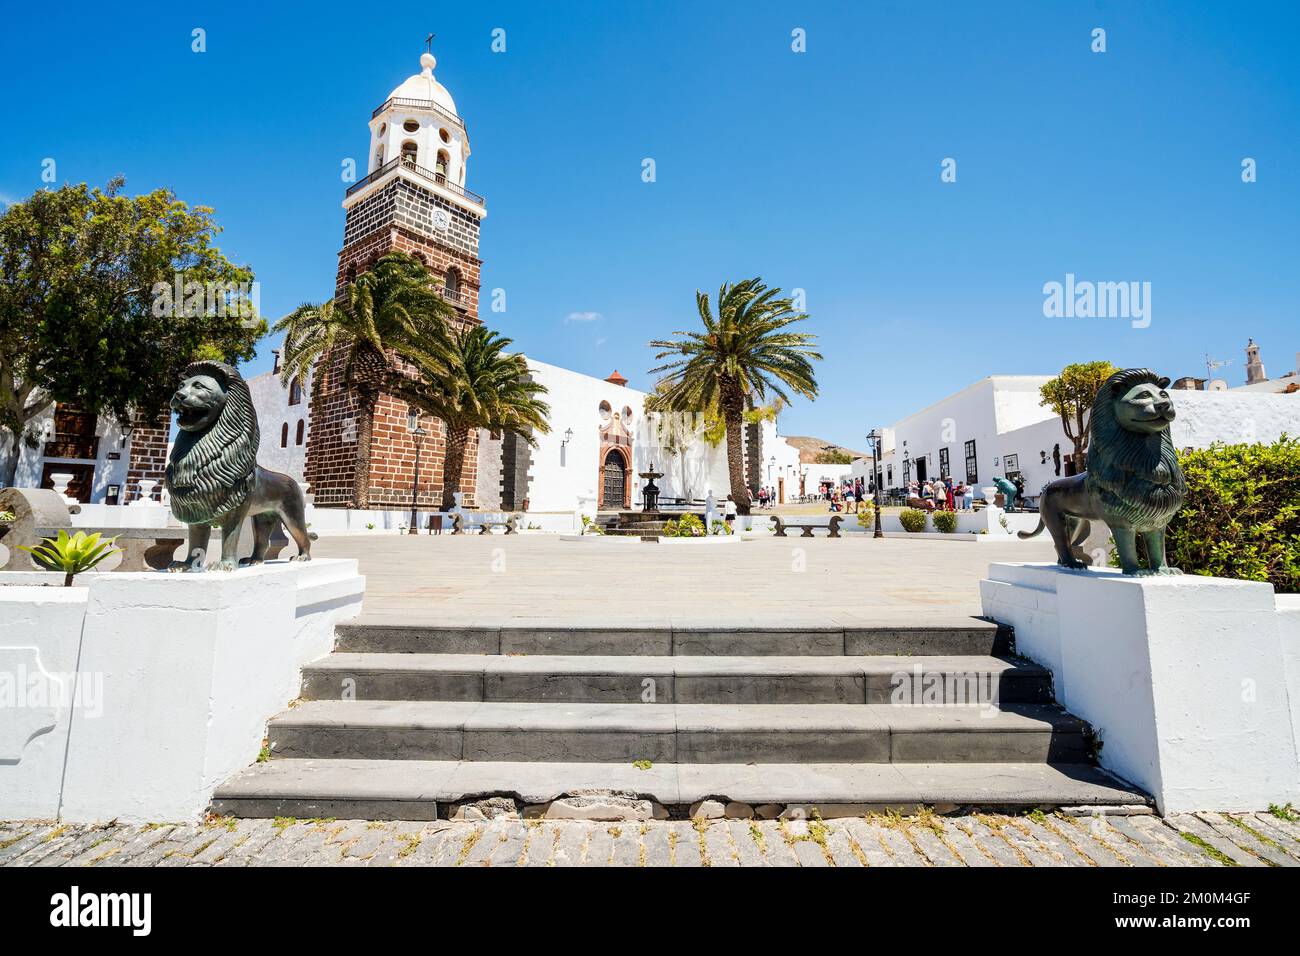 Vieille église de notre dame de Guadalupe - le principal monument historique de Teguise, Lanzarote, îles Canaries, Espagne Banque D'Images